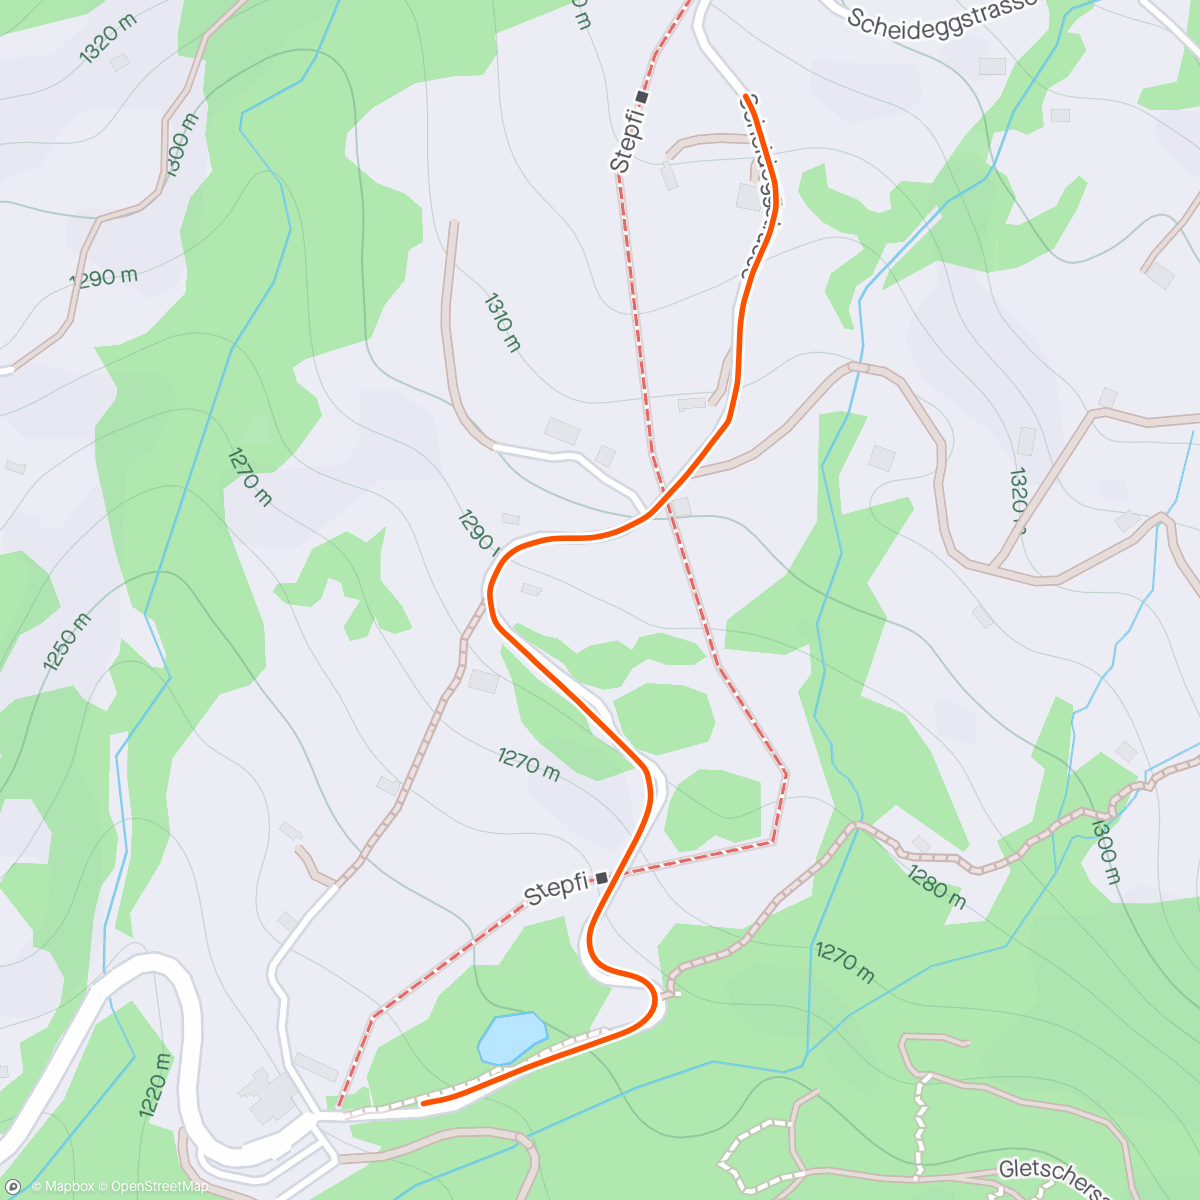 Map of the activity, BKOOL - Grosse Scheidegg  (Grindelwald)